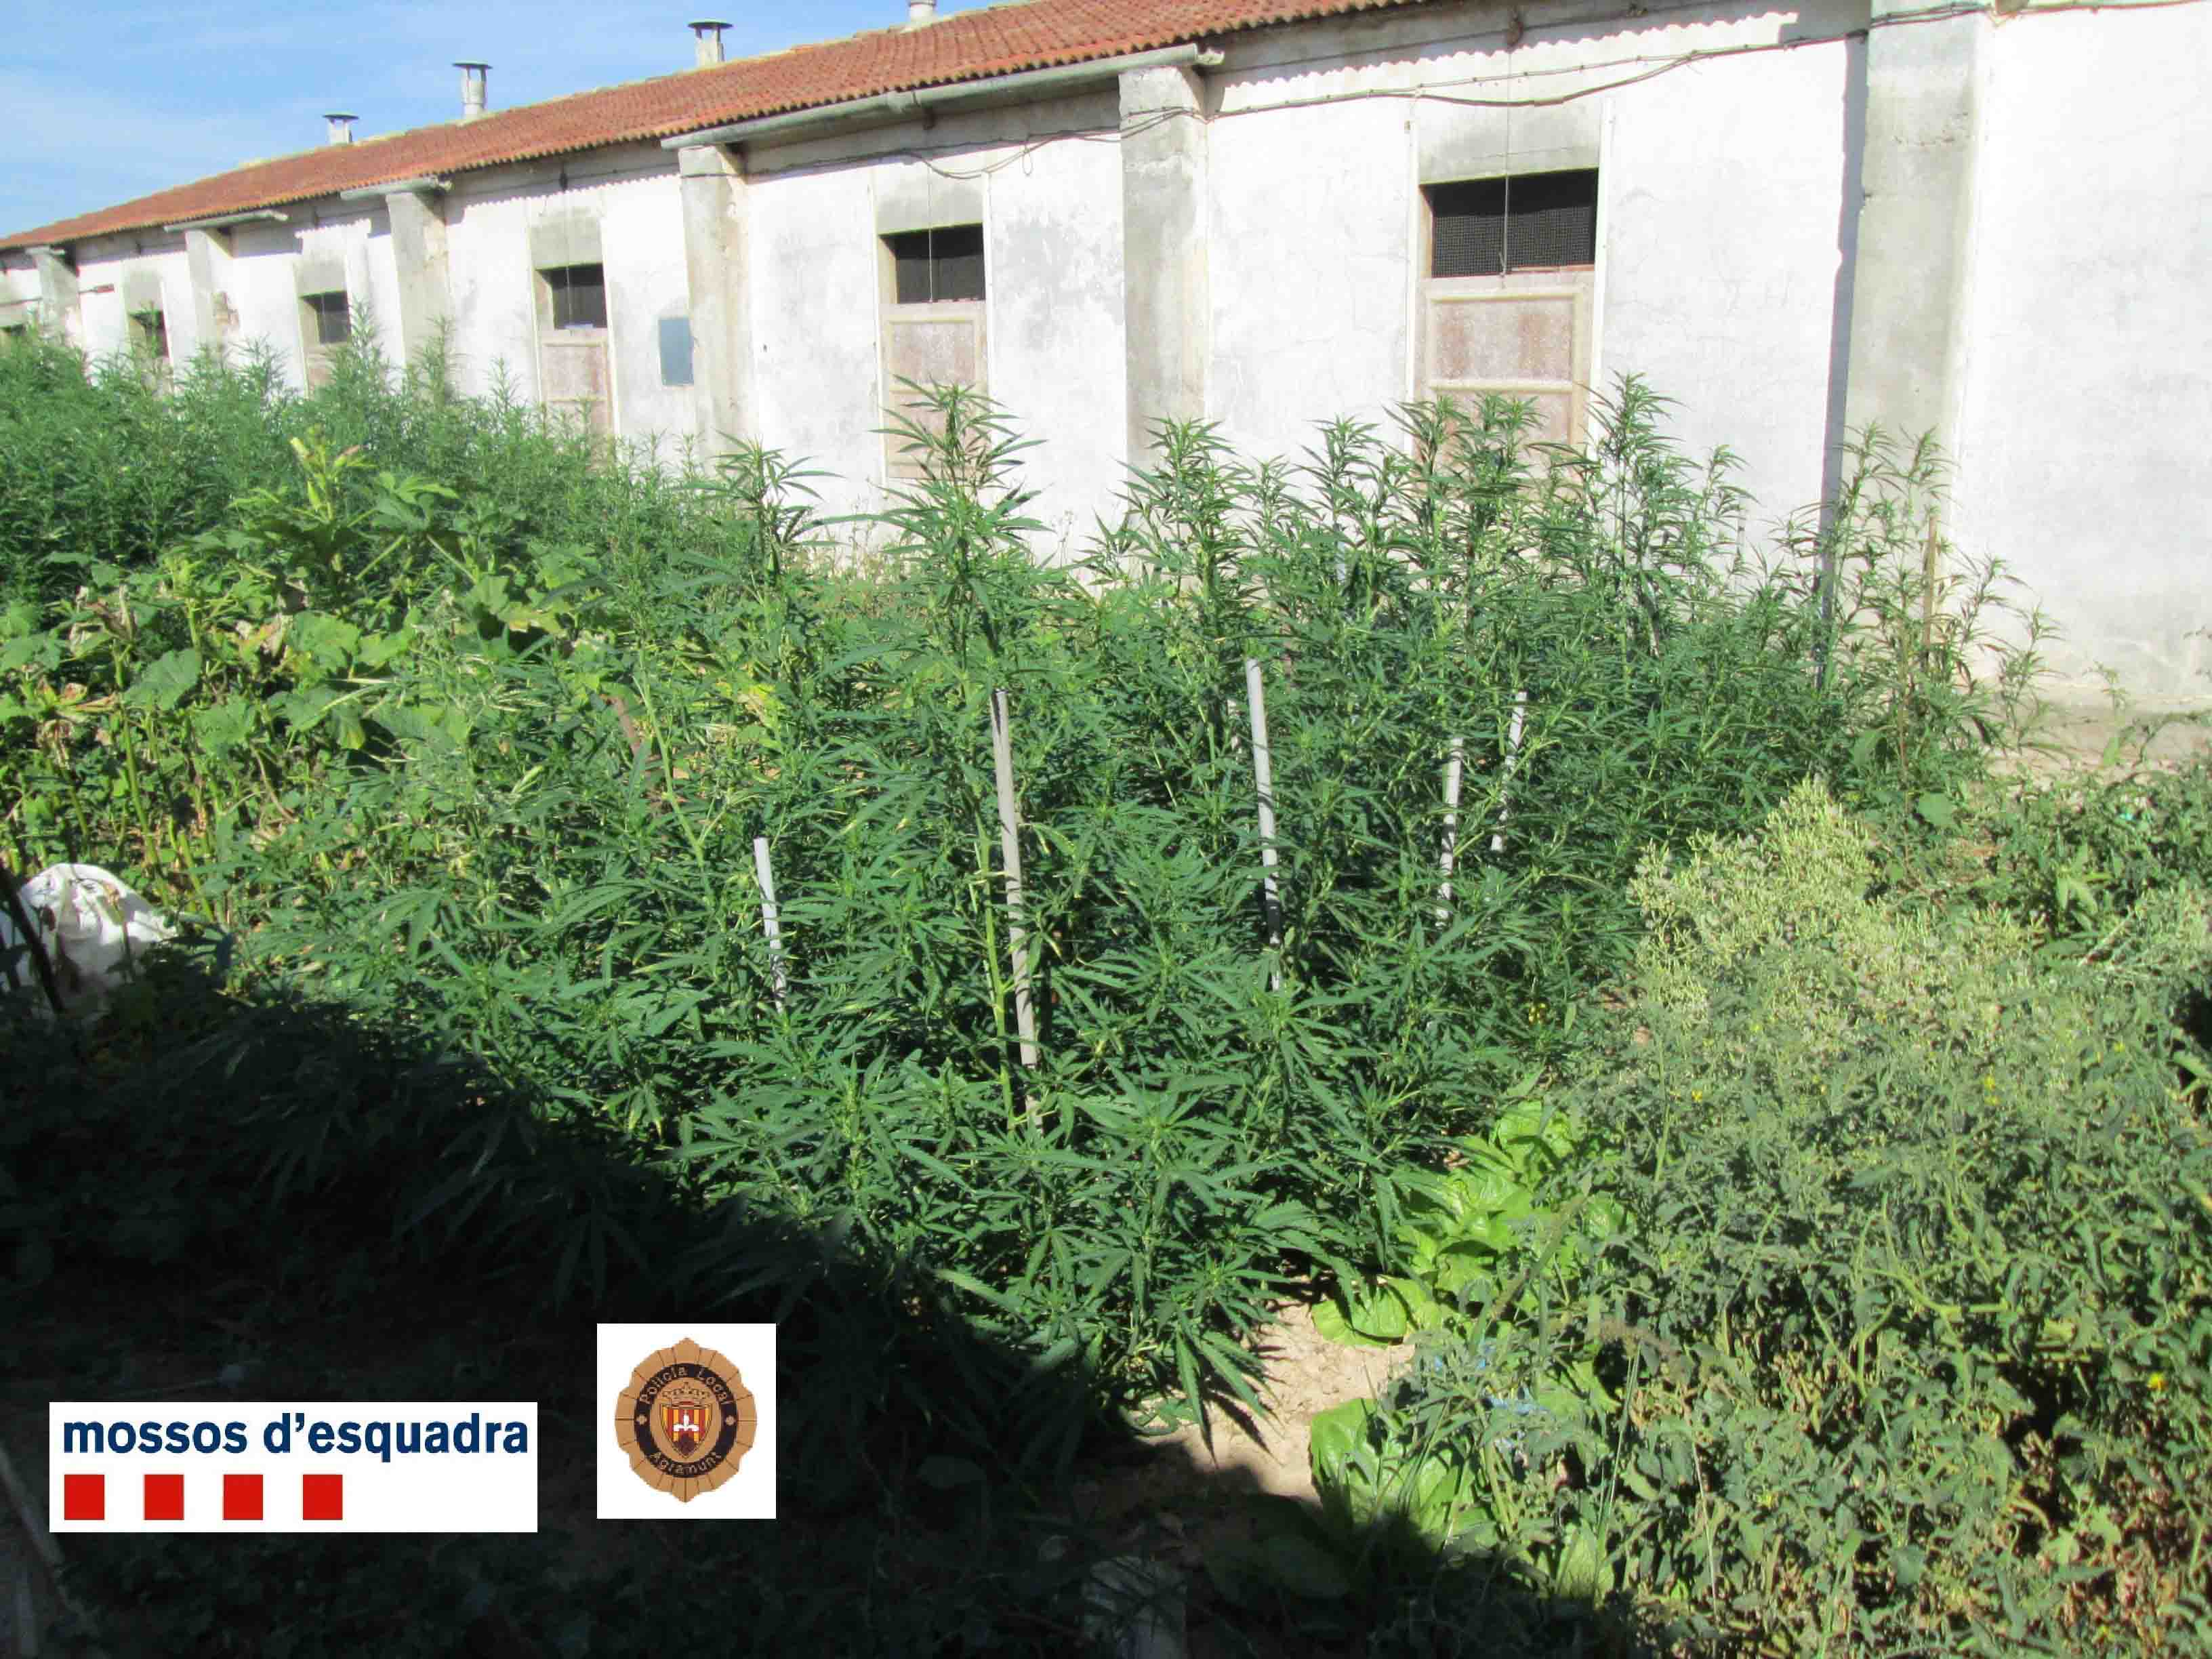 Els Mossos d’Esquadra detenen dues persones i desmantellen dues plantacions de marihuana en zones rurals d’Agramunt i Maials